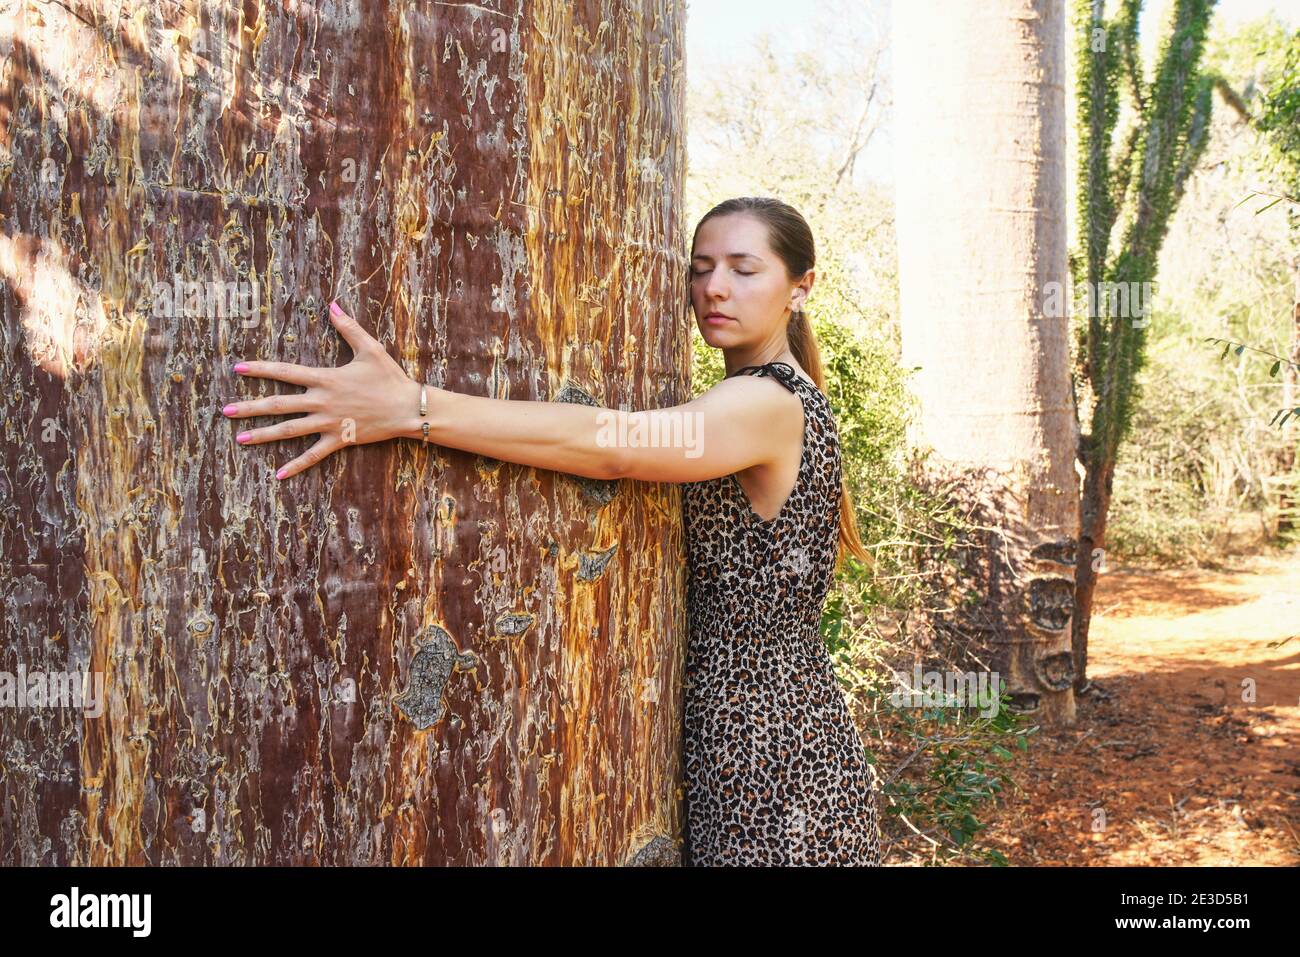 Une jeune femme se propageant les bras autour d'un énorme tronc d'arbre de baobab, l'embrassant, les yeux fermés Banque D'Images